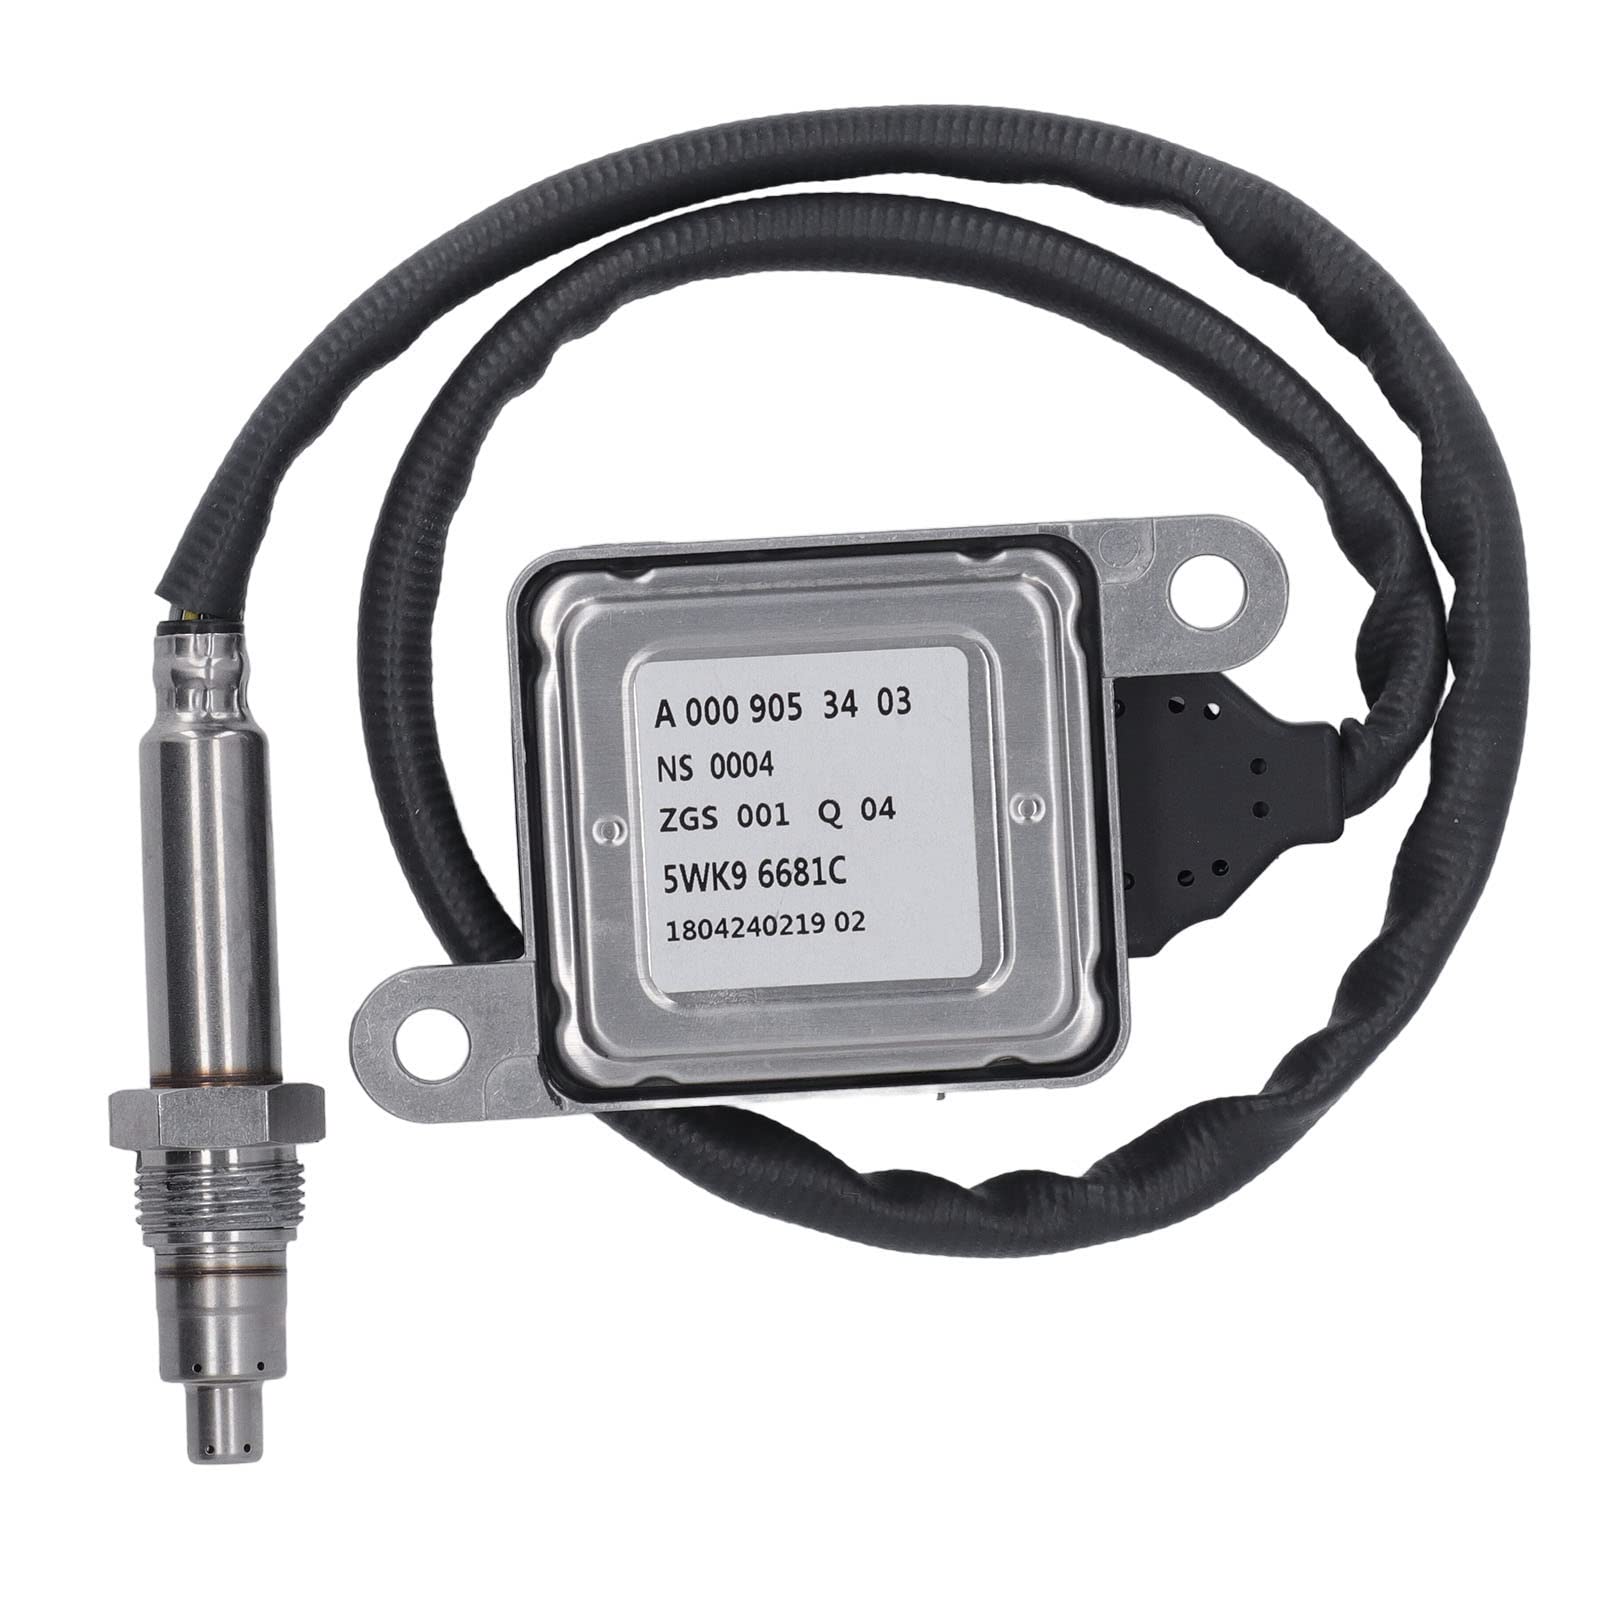 Nox-Sensor-Sonde, A0009053403 Nox-Sensor-Stickoxid-Sensor-Ersatz für Mercedes-Benz W164 W205 W212 W222 von Bediffer